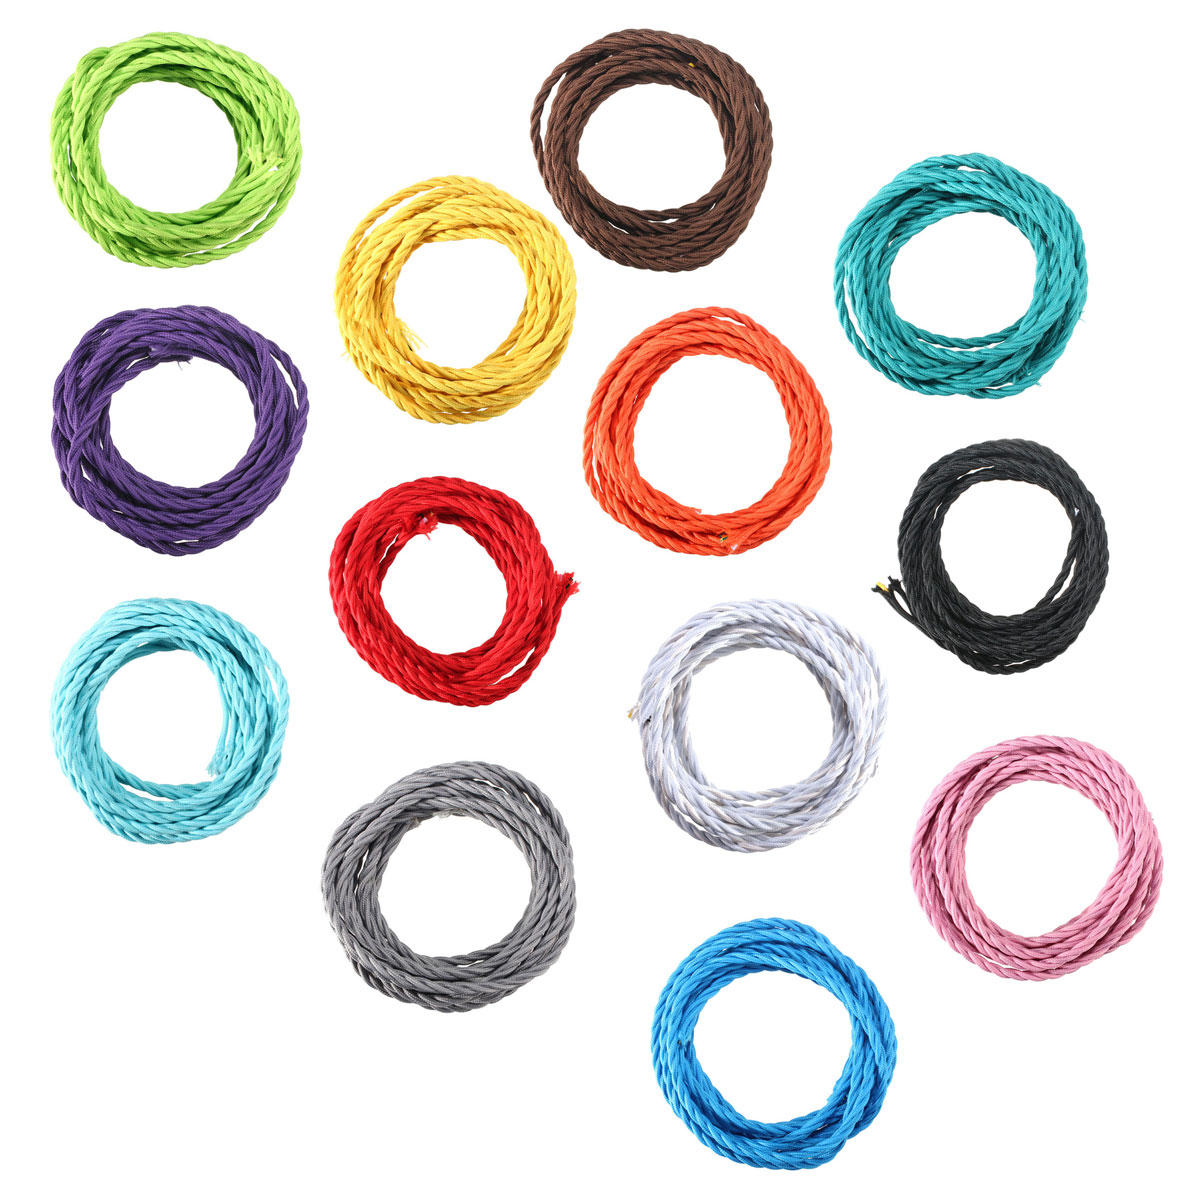 

5м цвета поделки твист плетеный ткани гибкий кабель провод шнура год сбора винограда электрический свет лампы